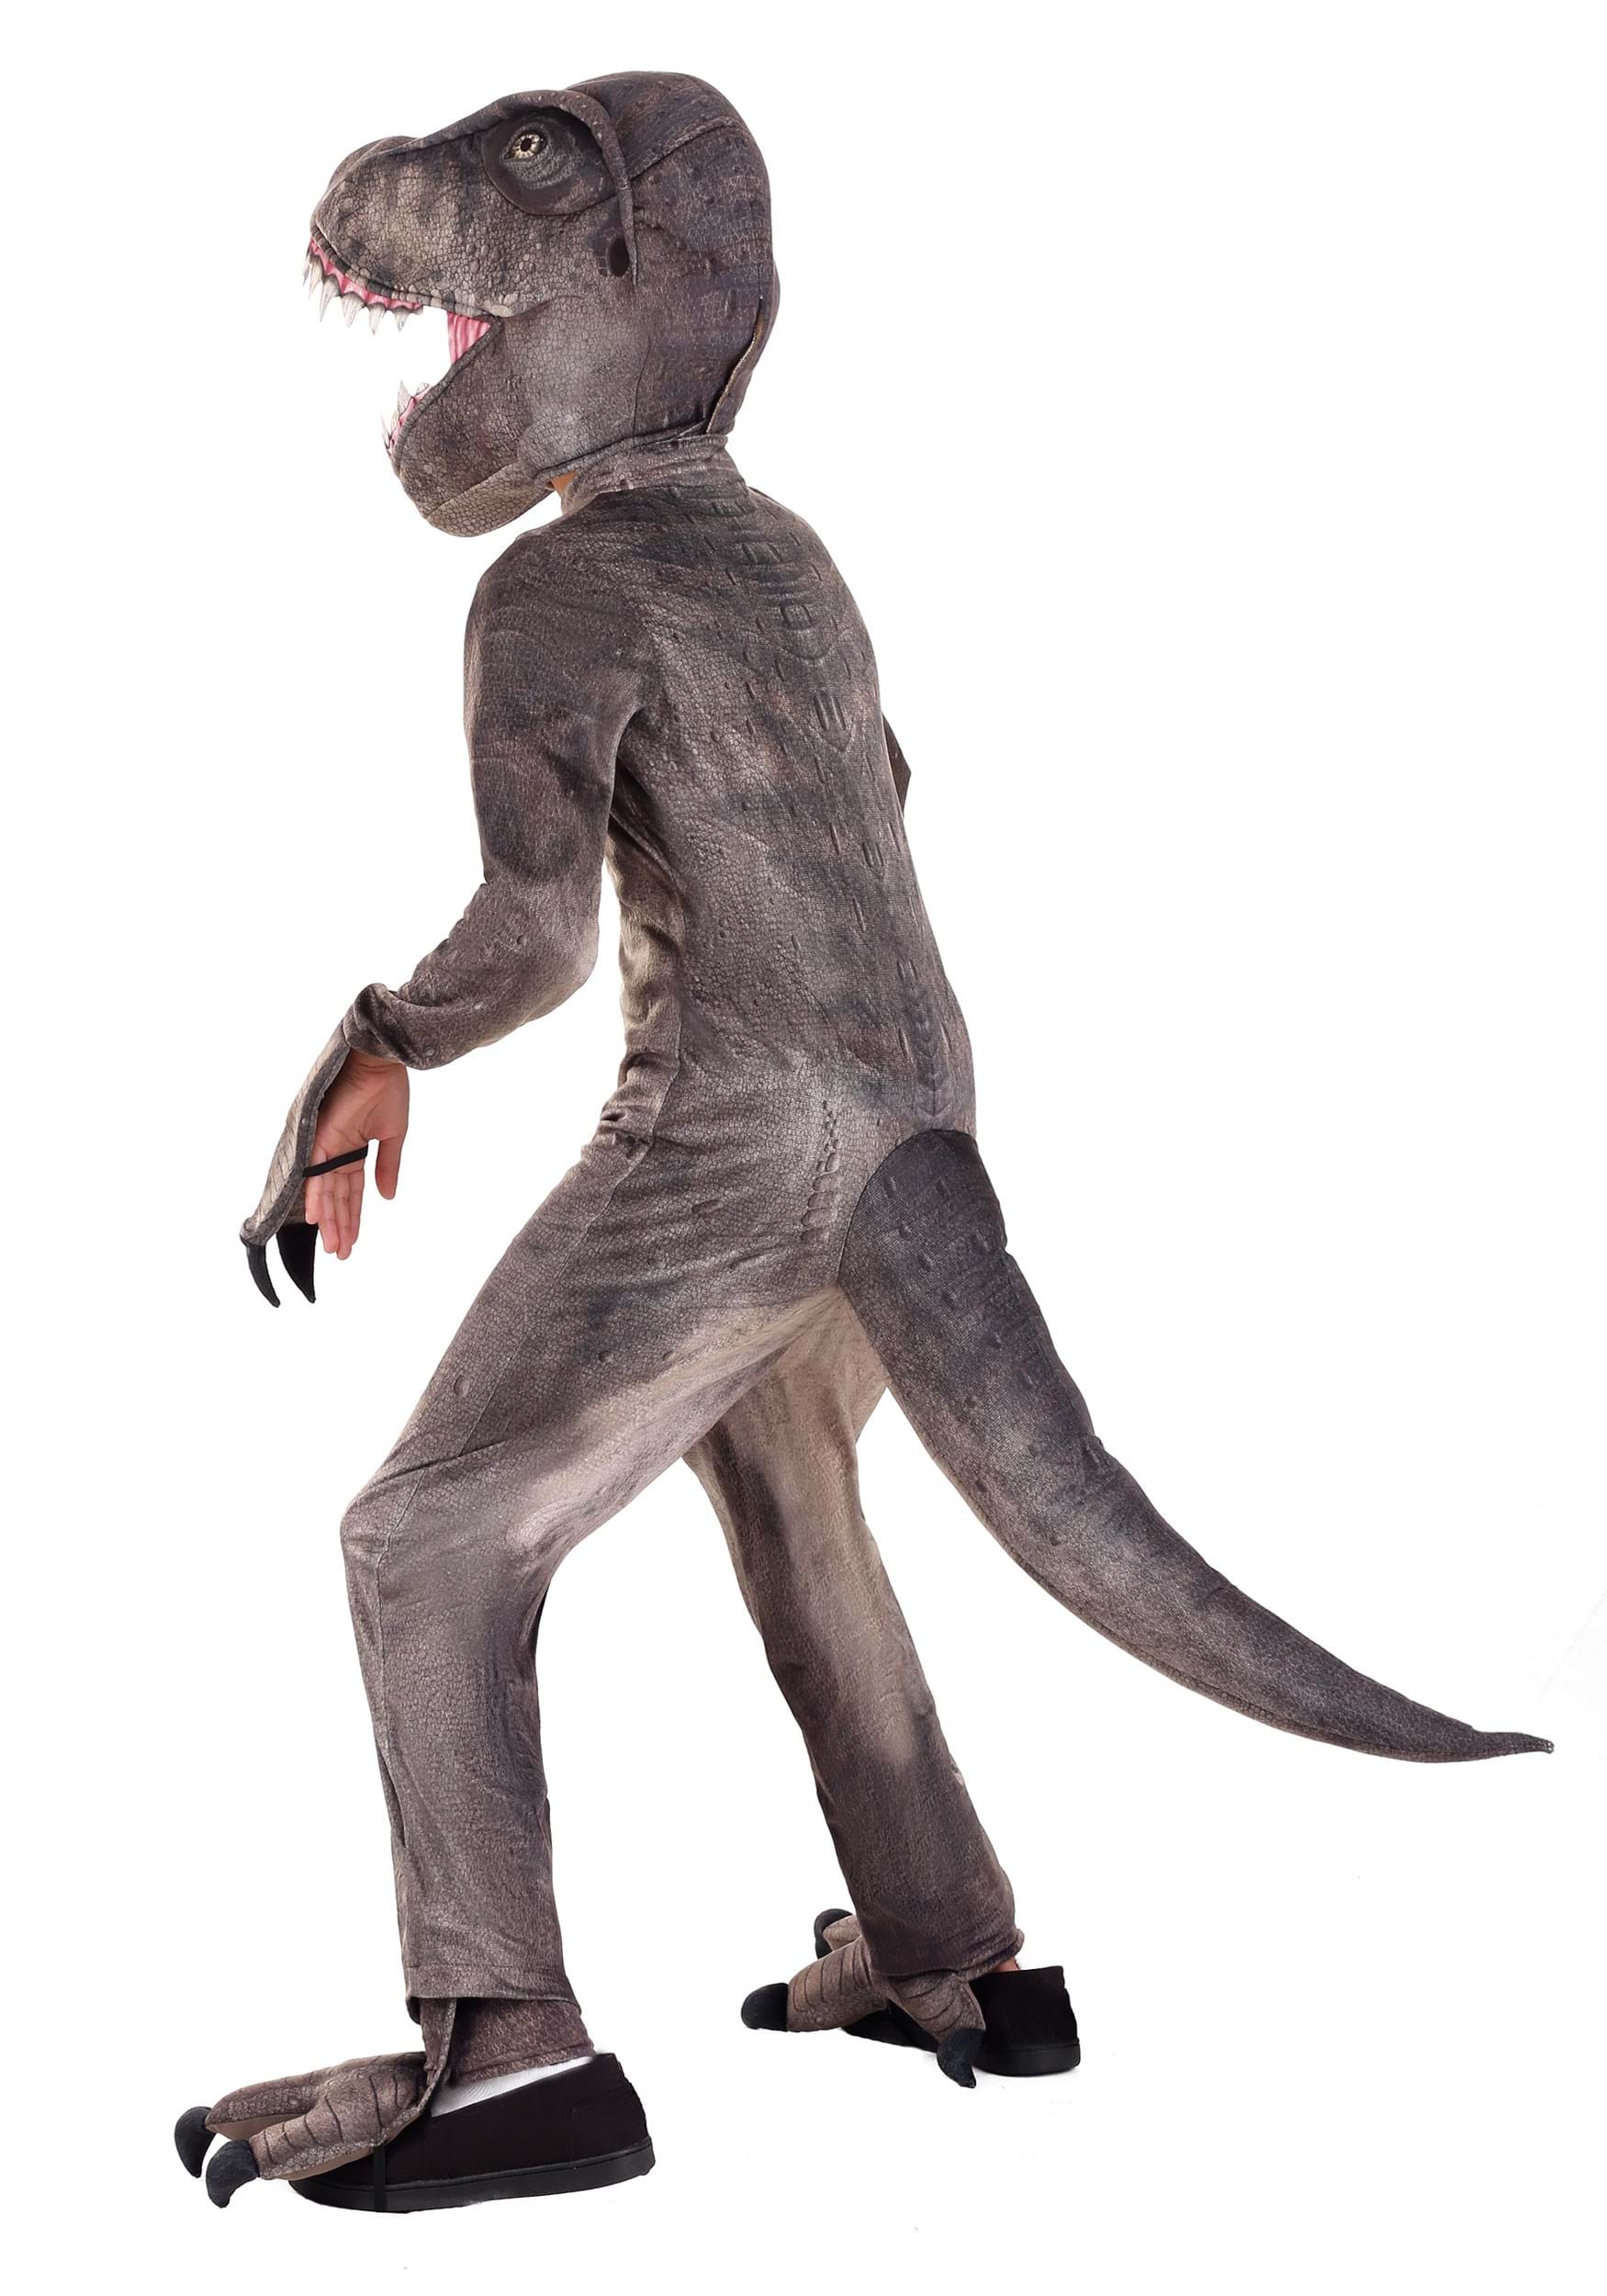 T-Rex Kids Costume